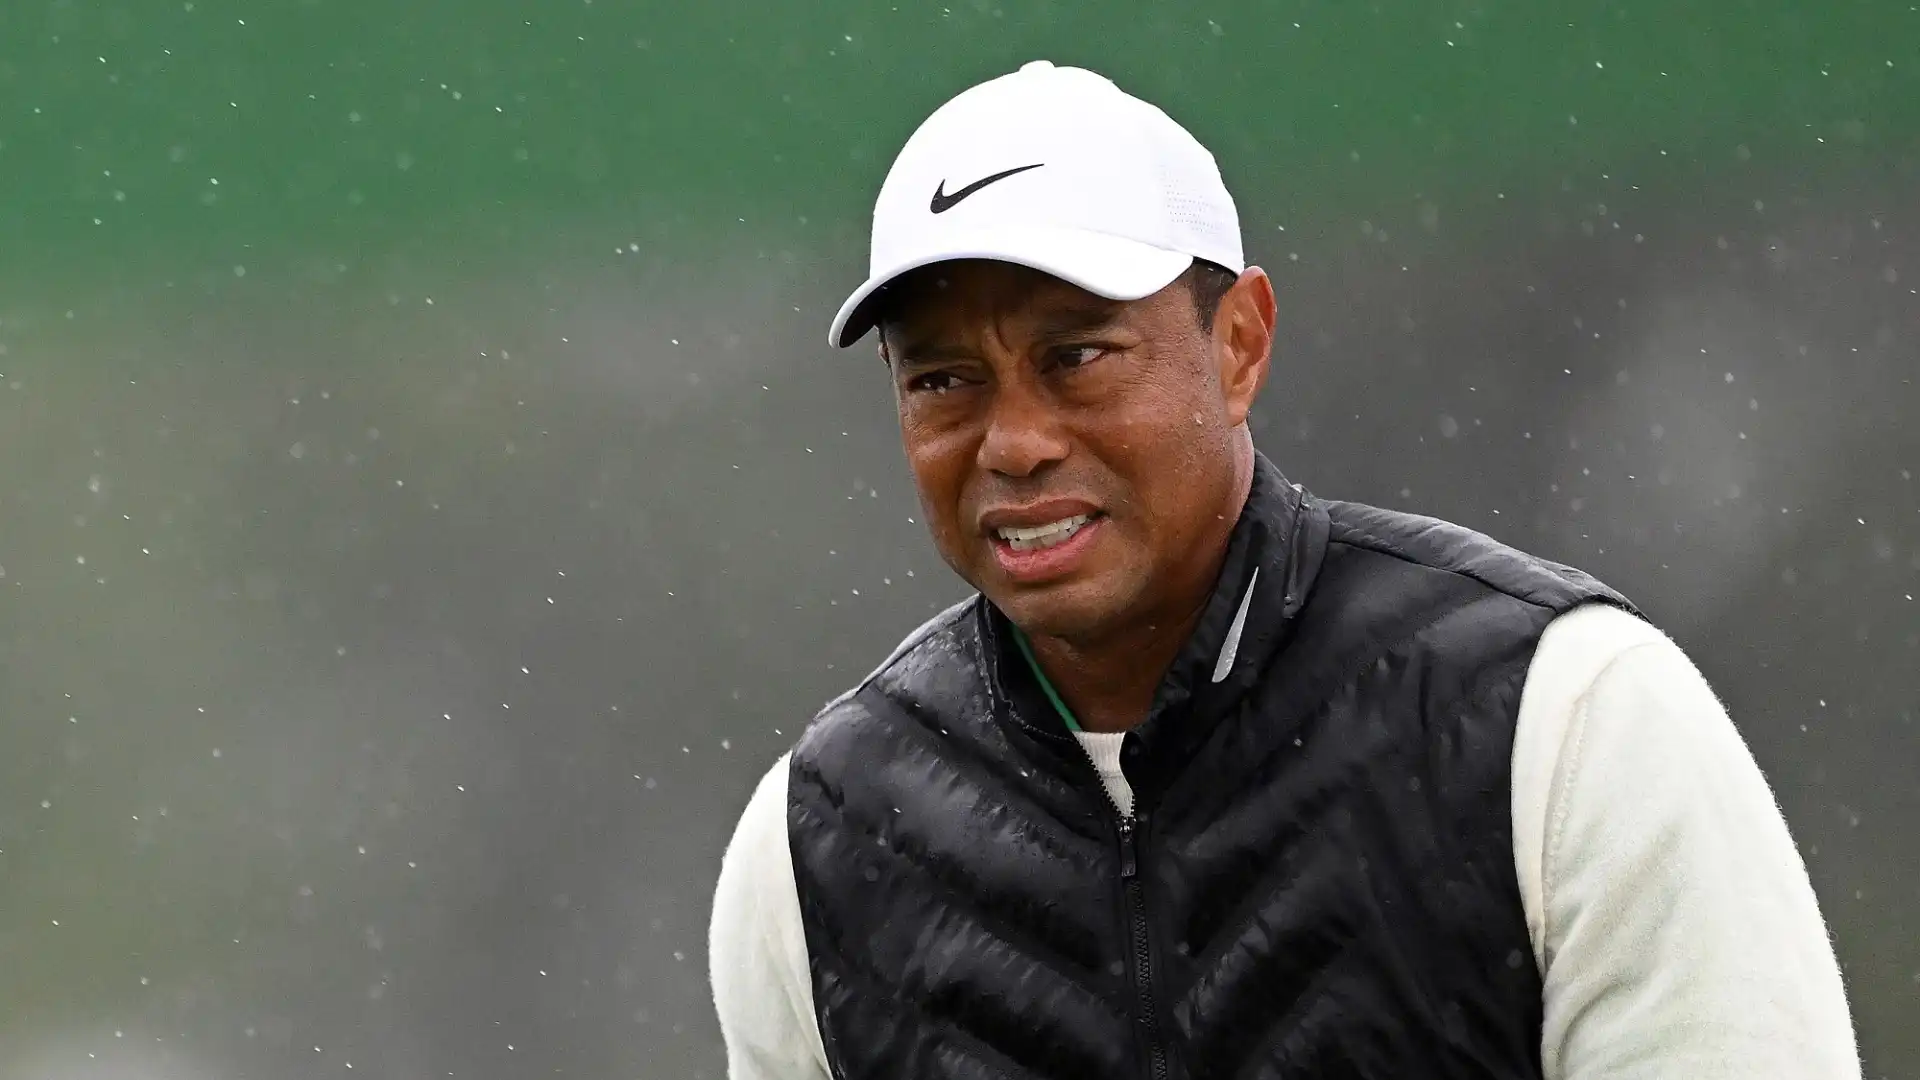 14 Tiger Woods (Golf): stipendio $12.2M; sponsorizzazioni  $65M. Totale $77.2M